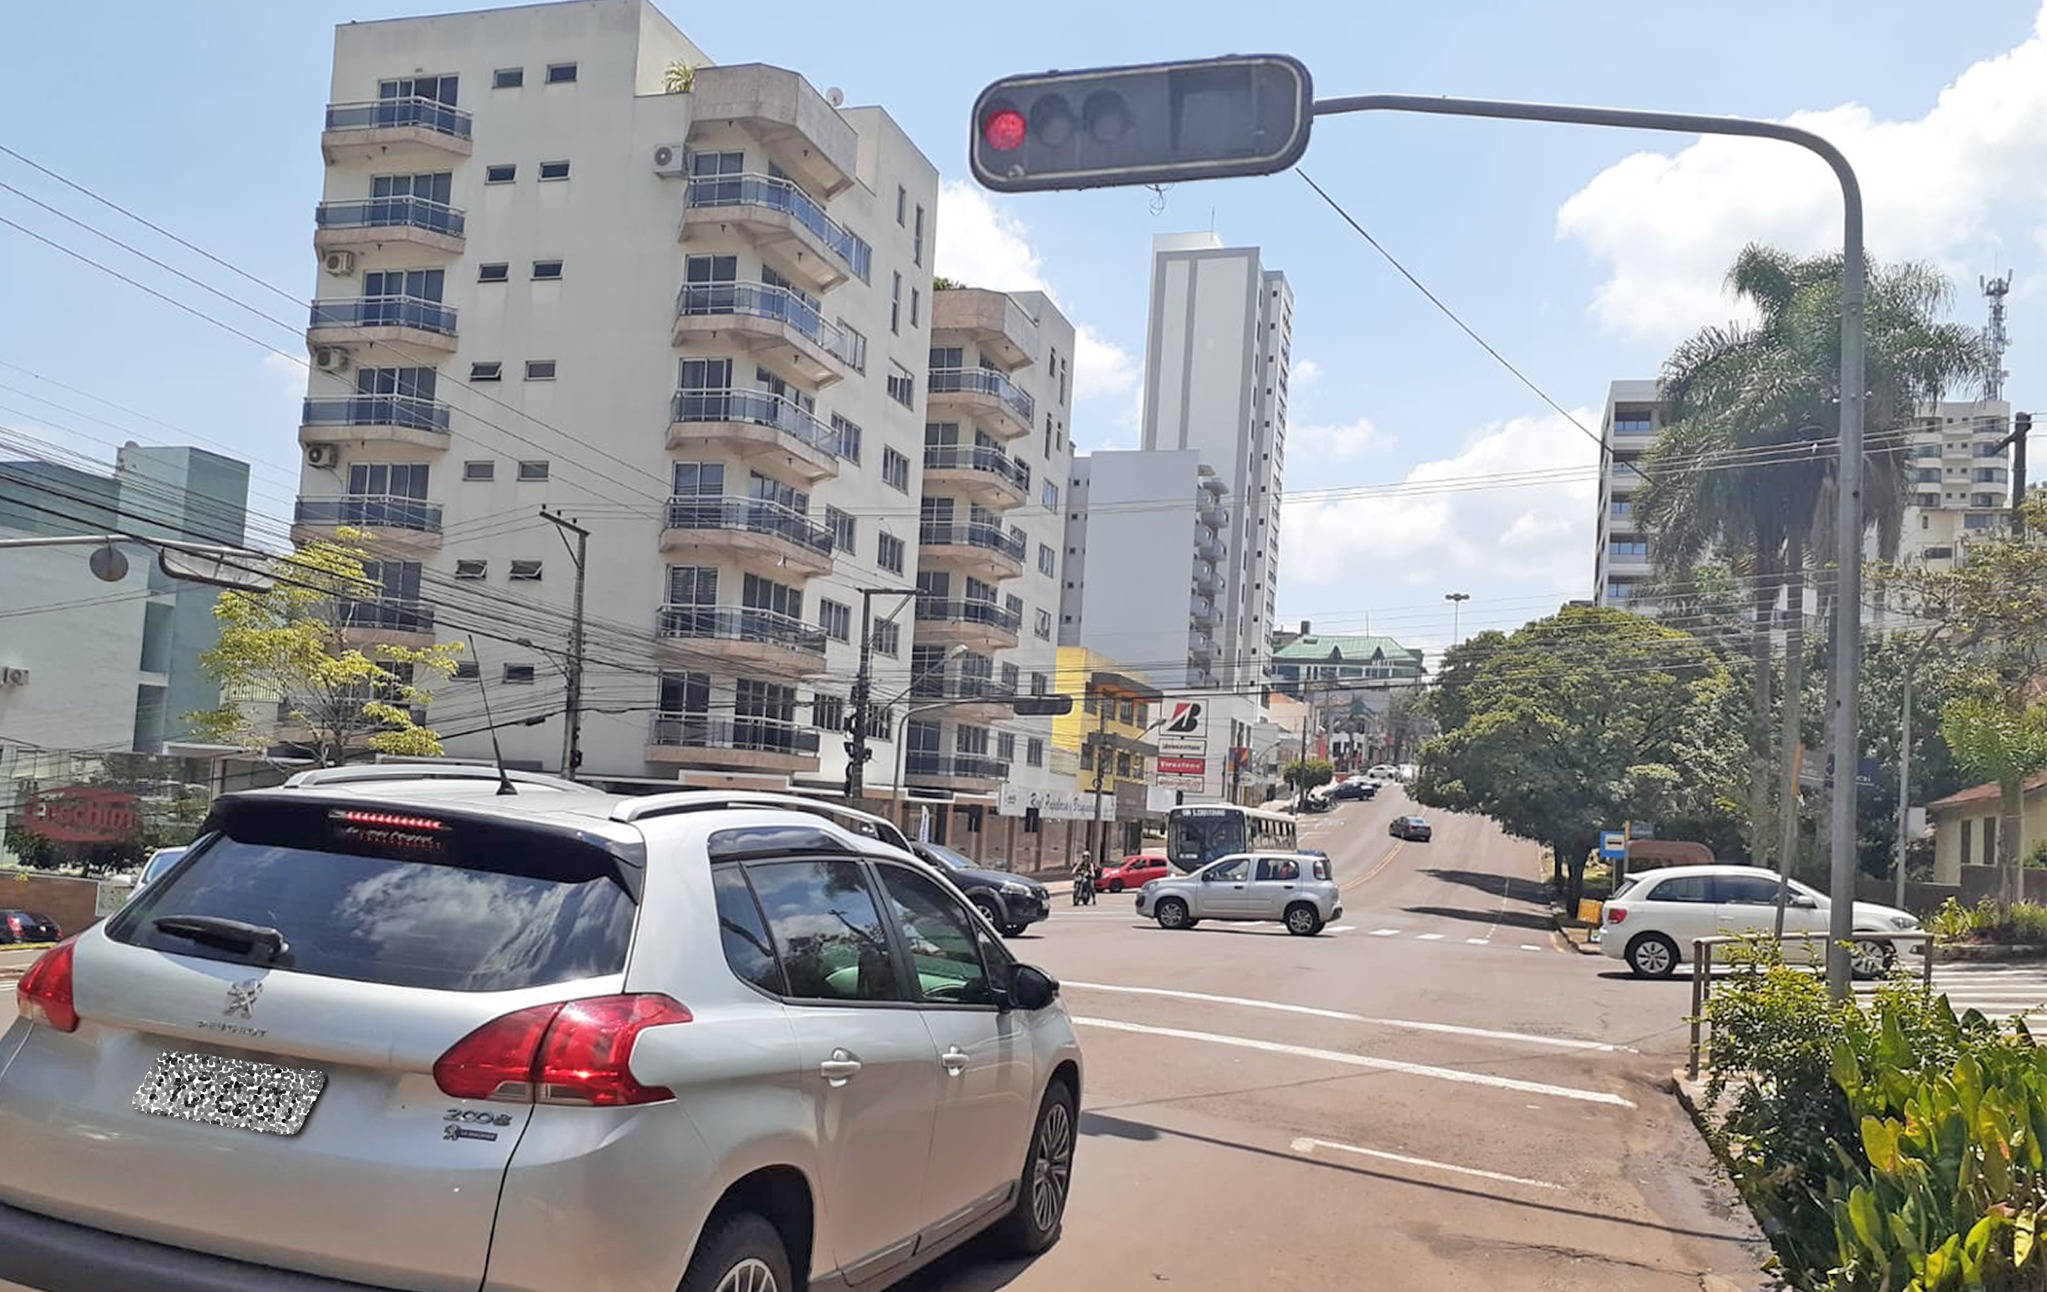  Passar no sinal vermelho pode tirar vidas de pedestres e motoristas 